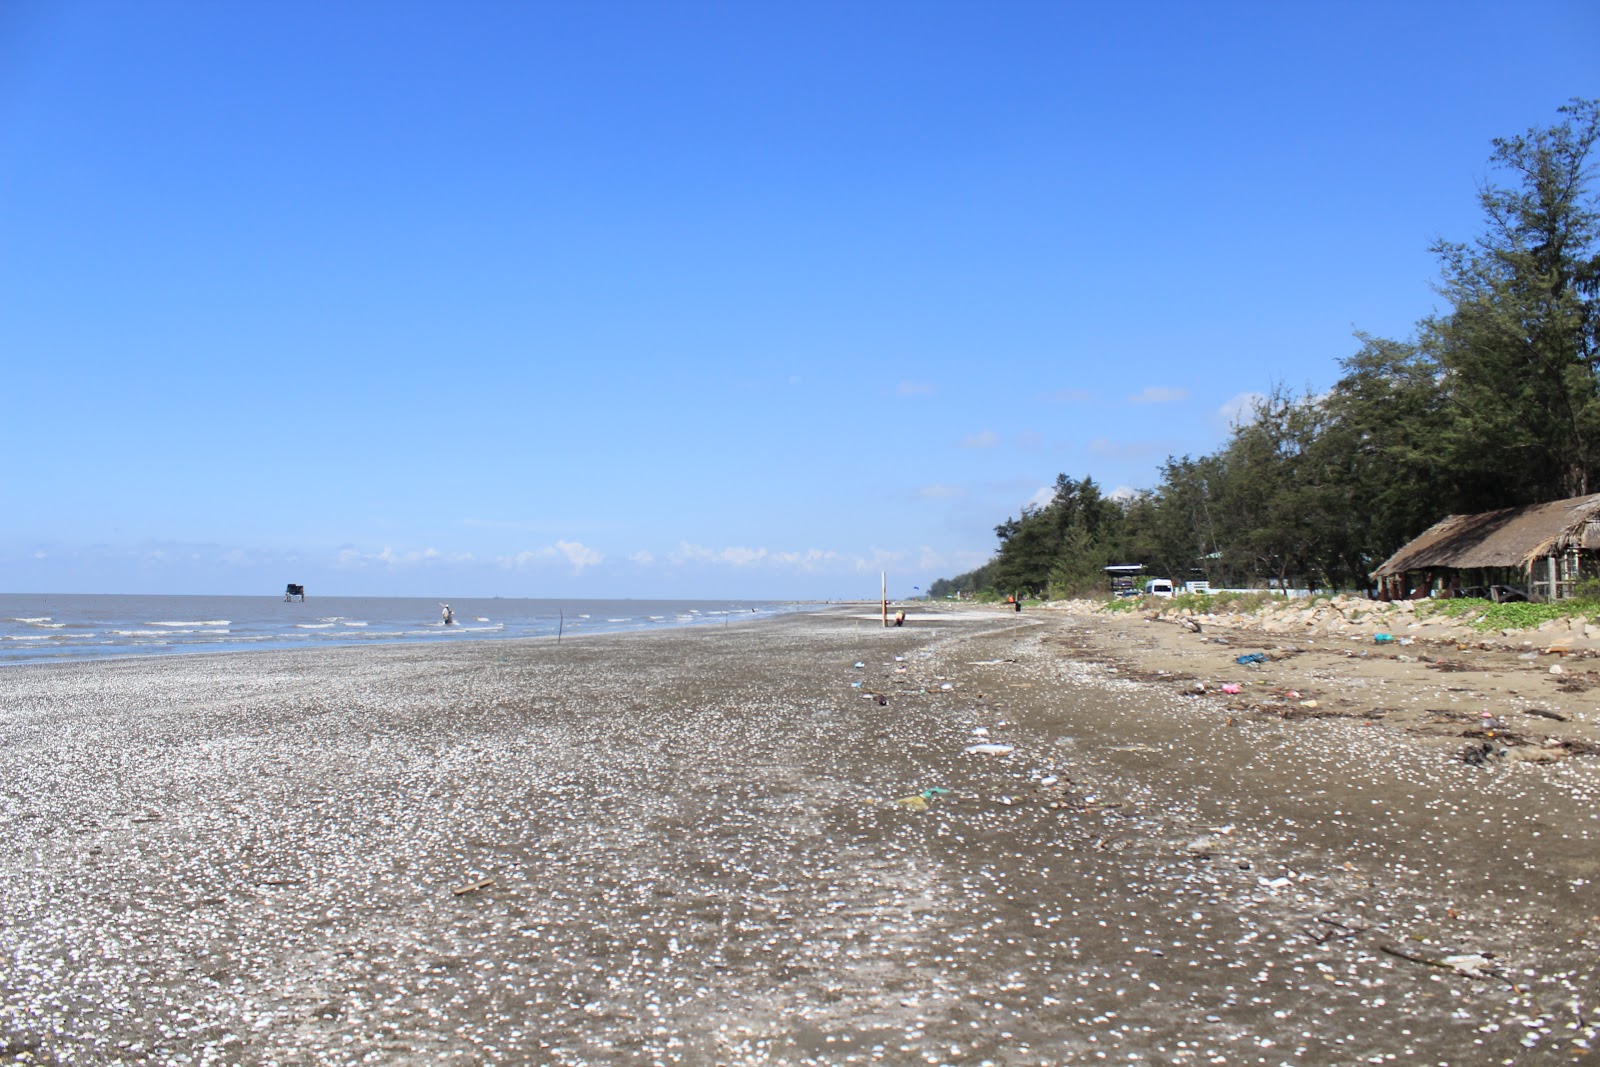 Fotografie cu Can Gio Beach amplasat într-o zonă naturală